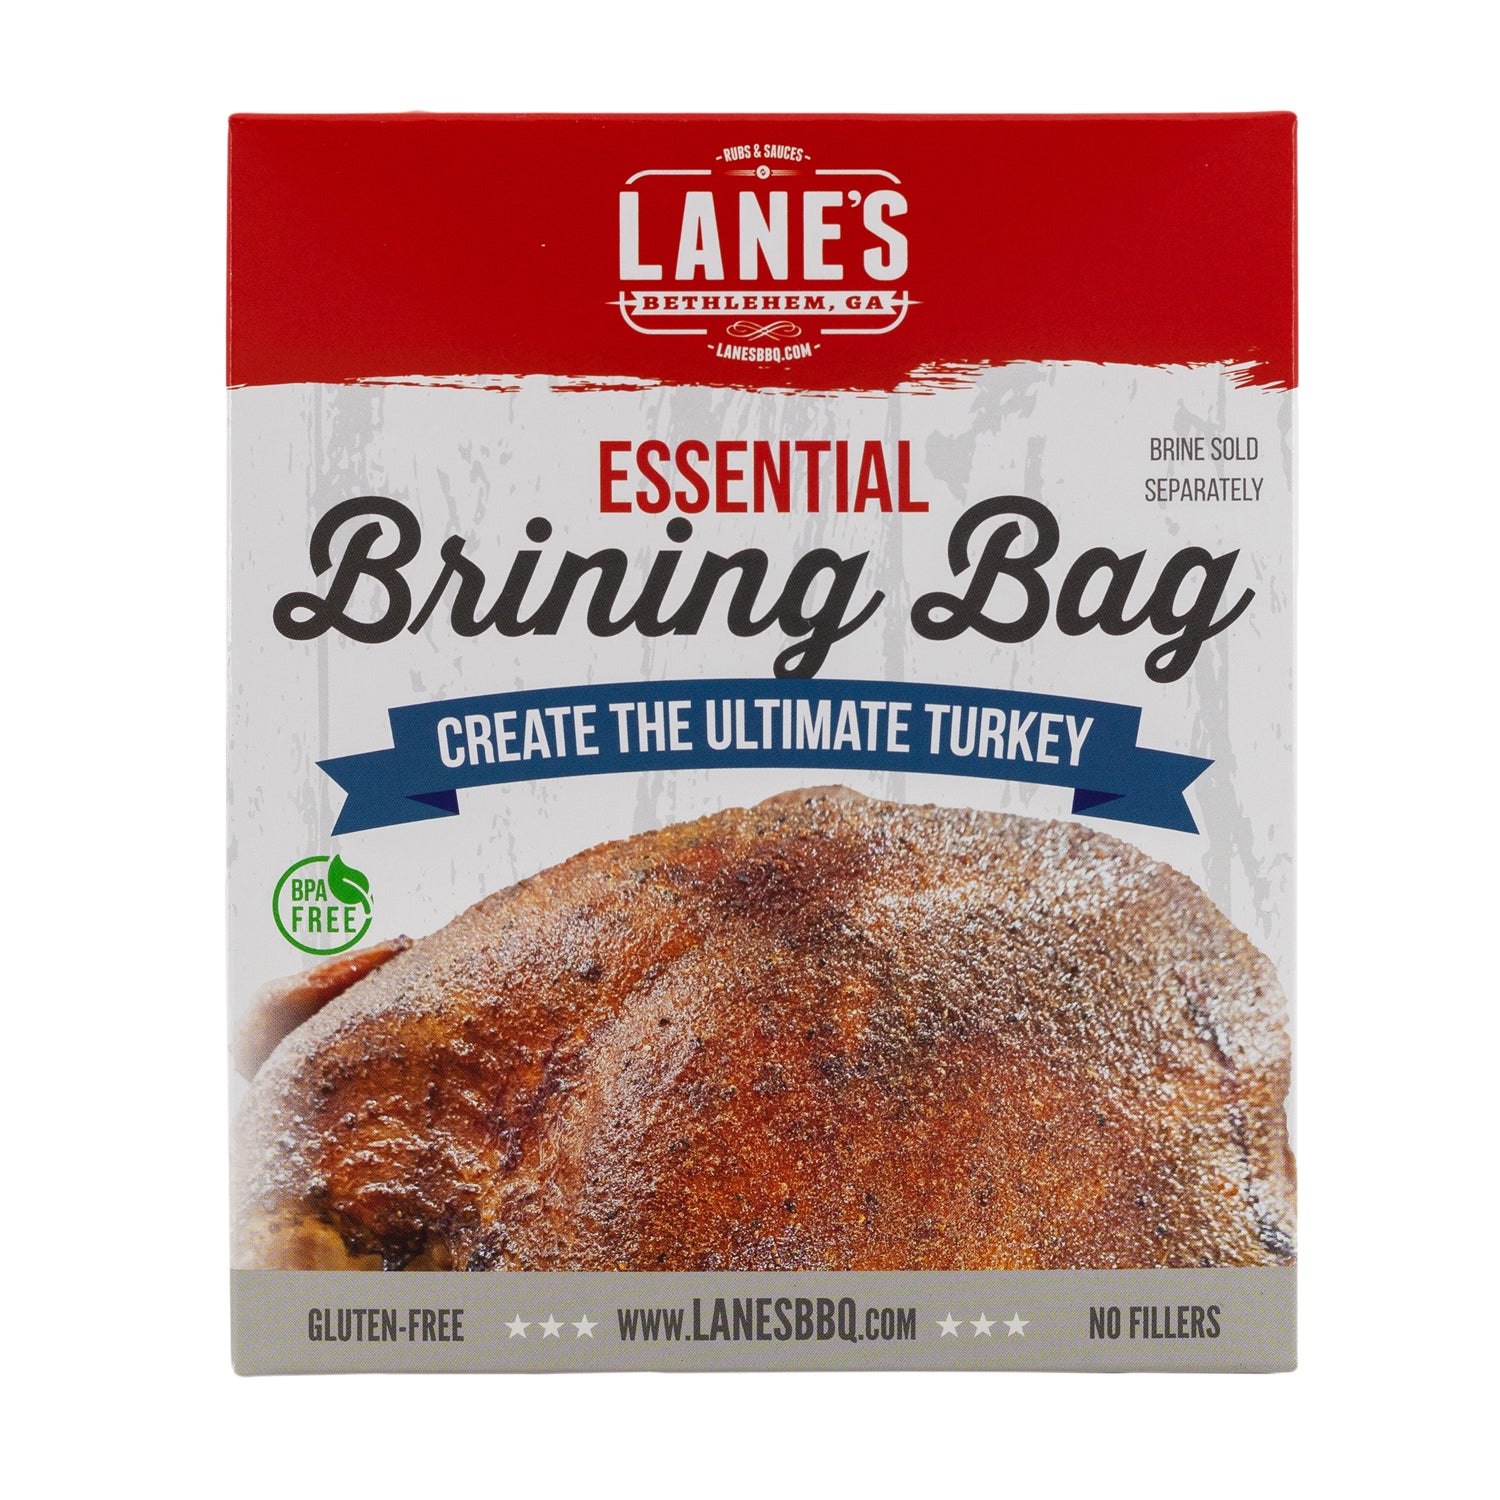 Lane's Brining Bag